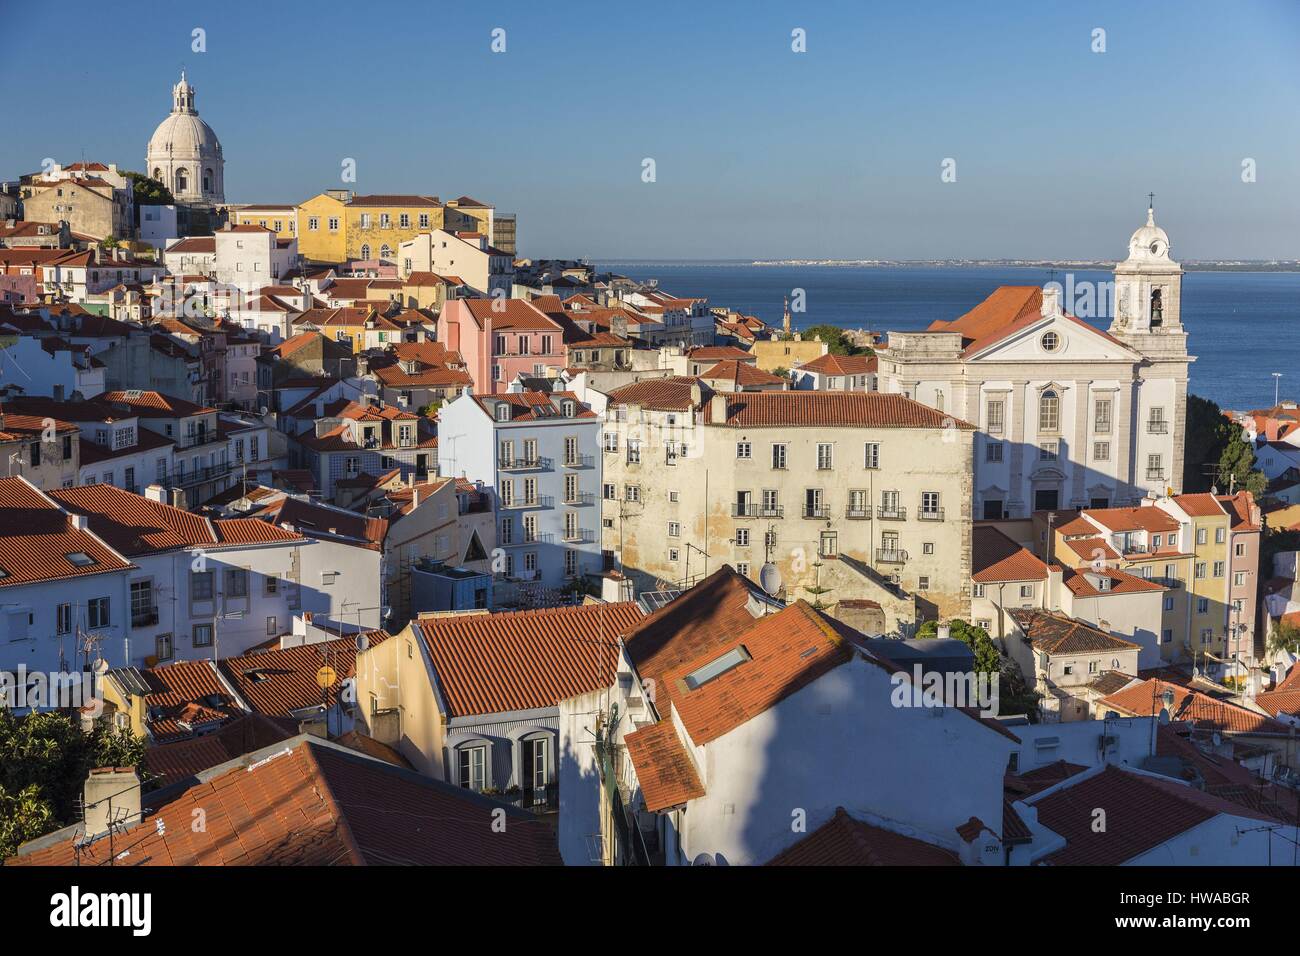 Portugal, Lisbonne, district d'Alfama, vue sur le dôme de la Panthéon national du Portugal ancienne église de Santa Engracia, l'église Santo Estevao Banque D'Images